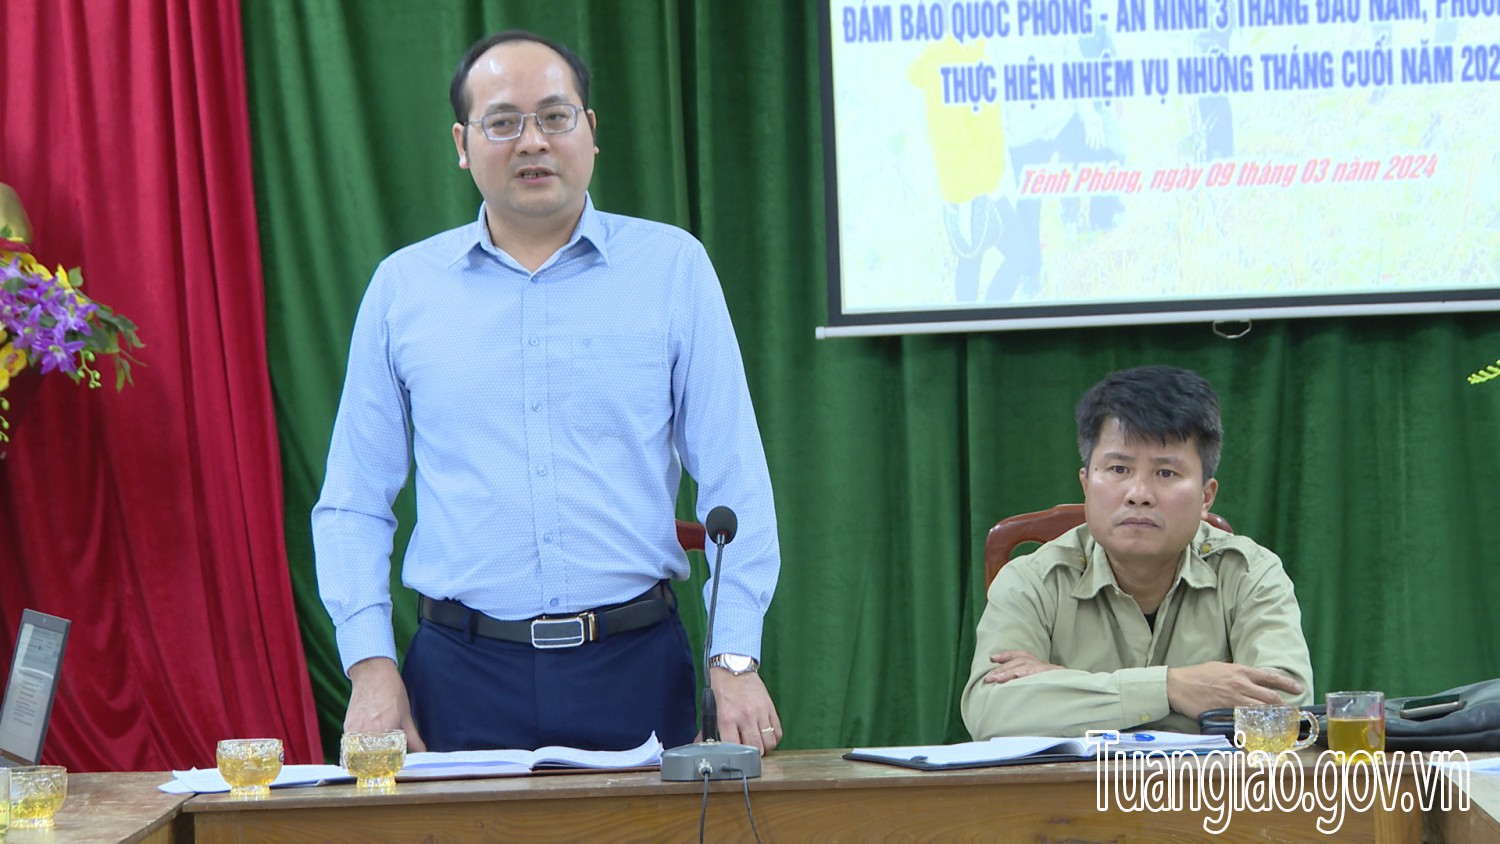 Chủ tịch UBND huyện Lê Xuân Cảnh kiểm tra, làm việc với xã Tênh Phông